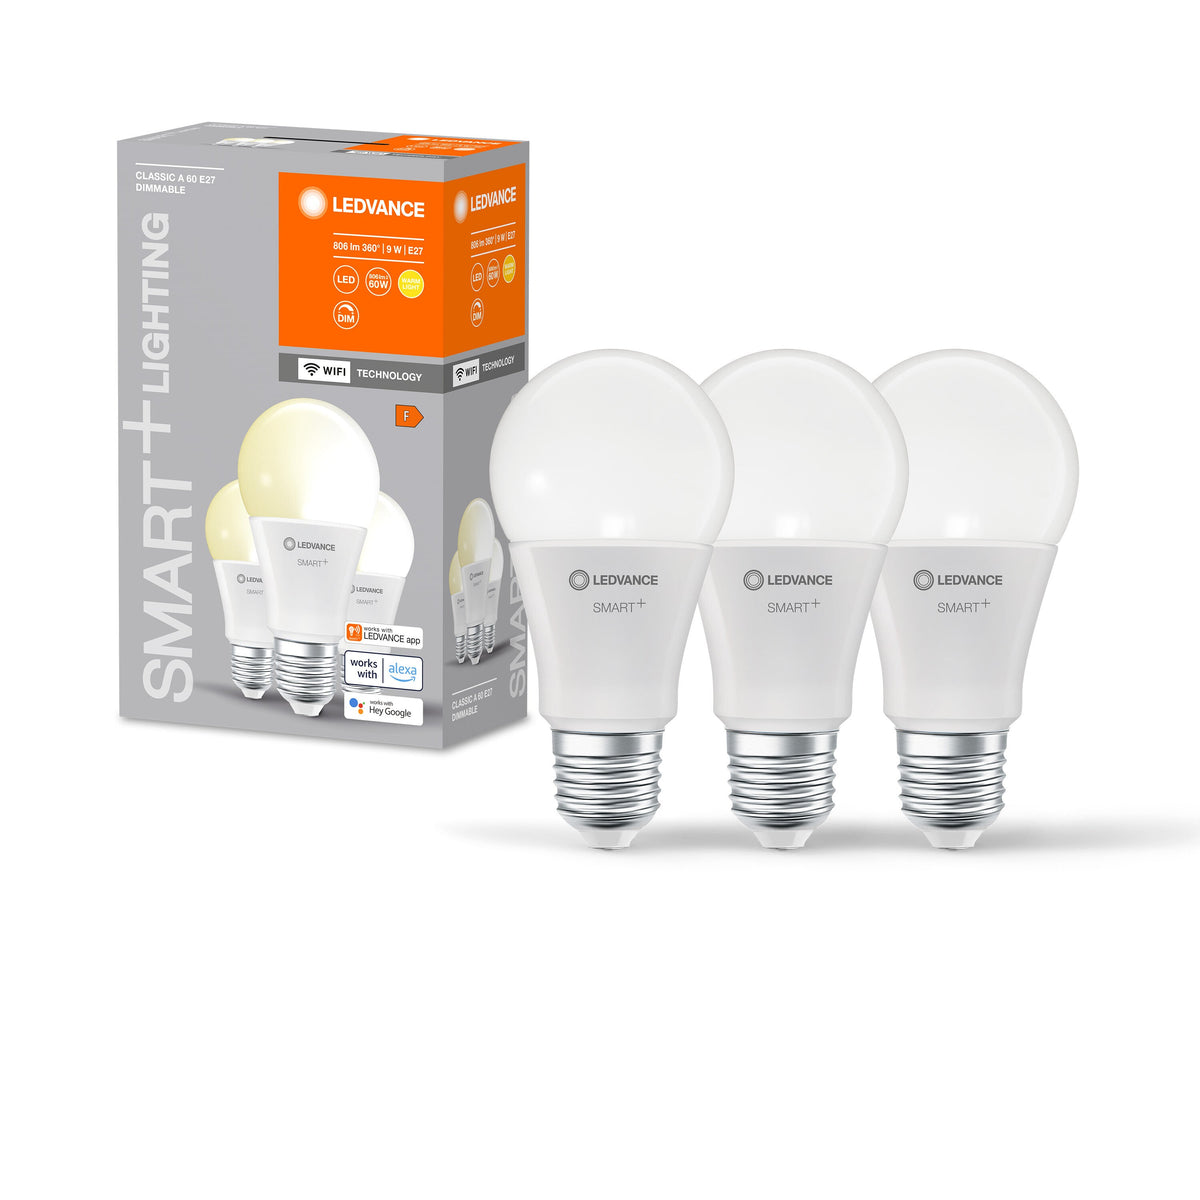 Lampada LED LEDVANCE Wifi SMART+, satinata, 9W, 806lm, confezione da 3